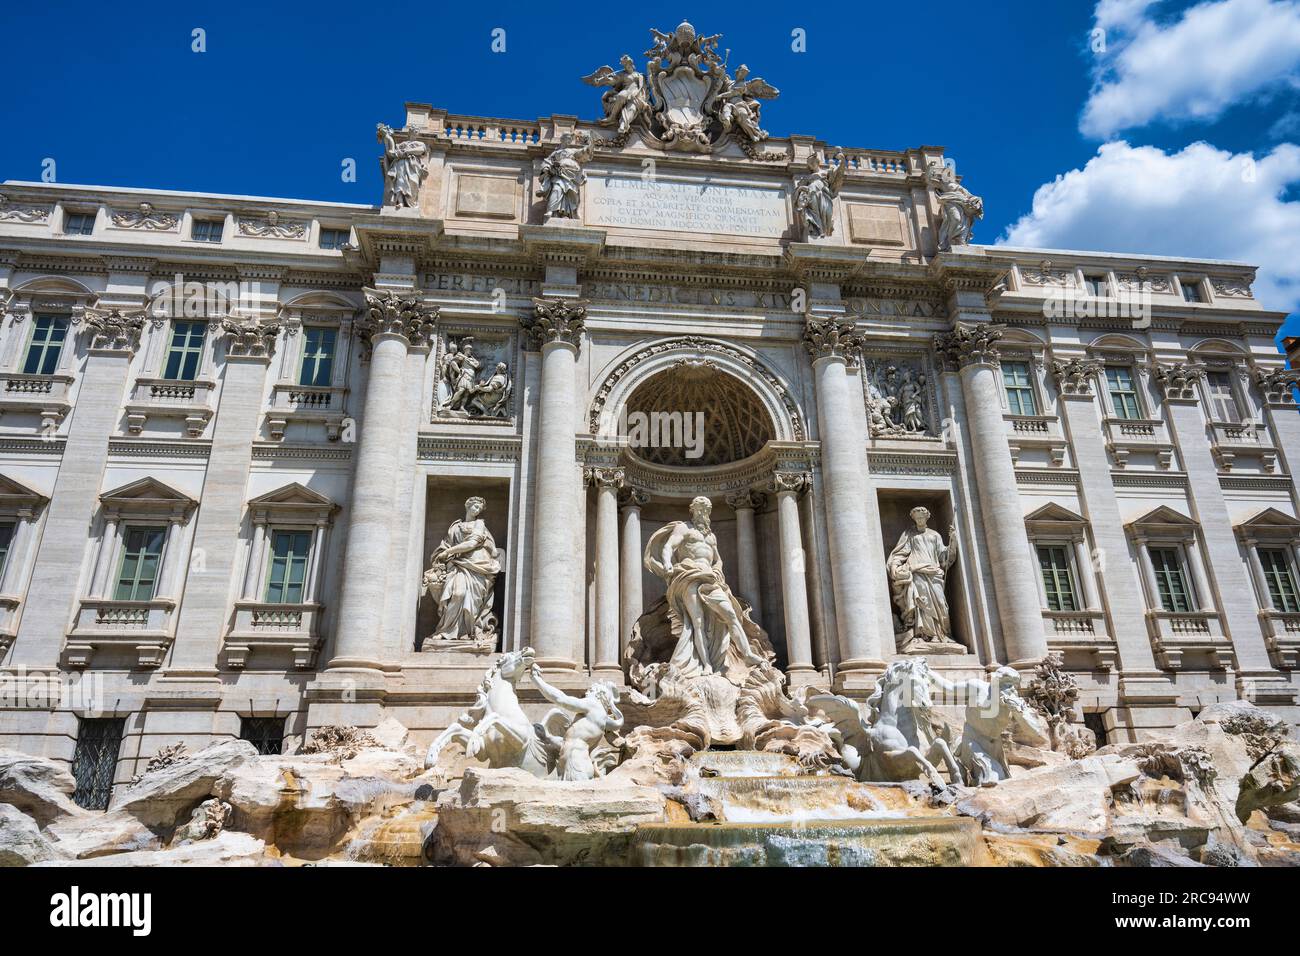 The façade of Palazzo Poli forms the backdrop to the Trevi Fountain (Fontana di Trevi) on Piazza di Trevi in Rome, Lazio Region, Italy Stock Photo